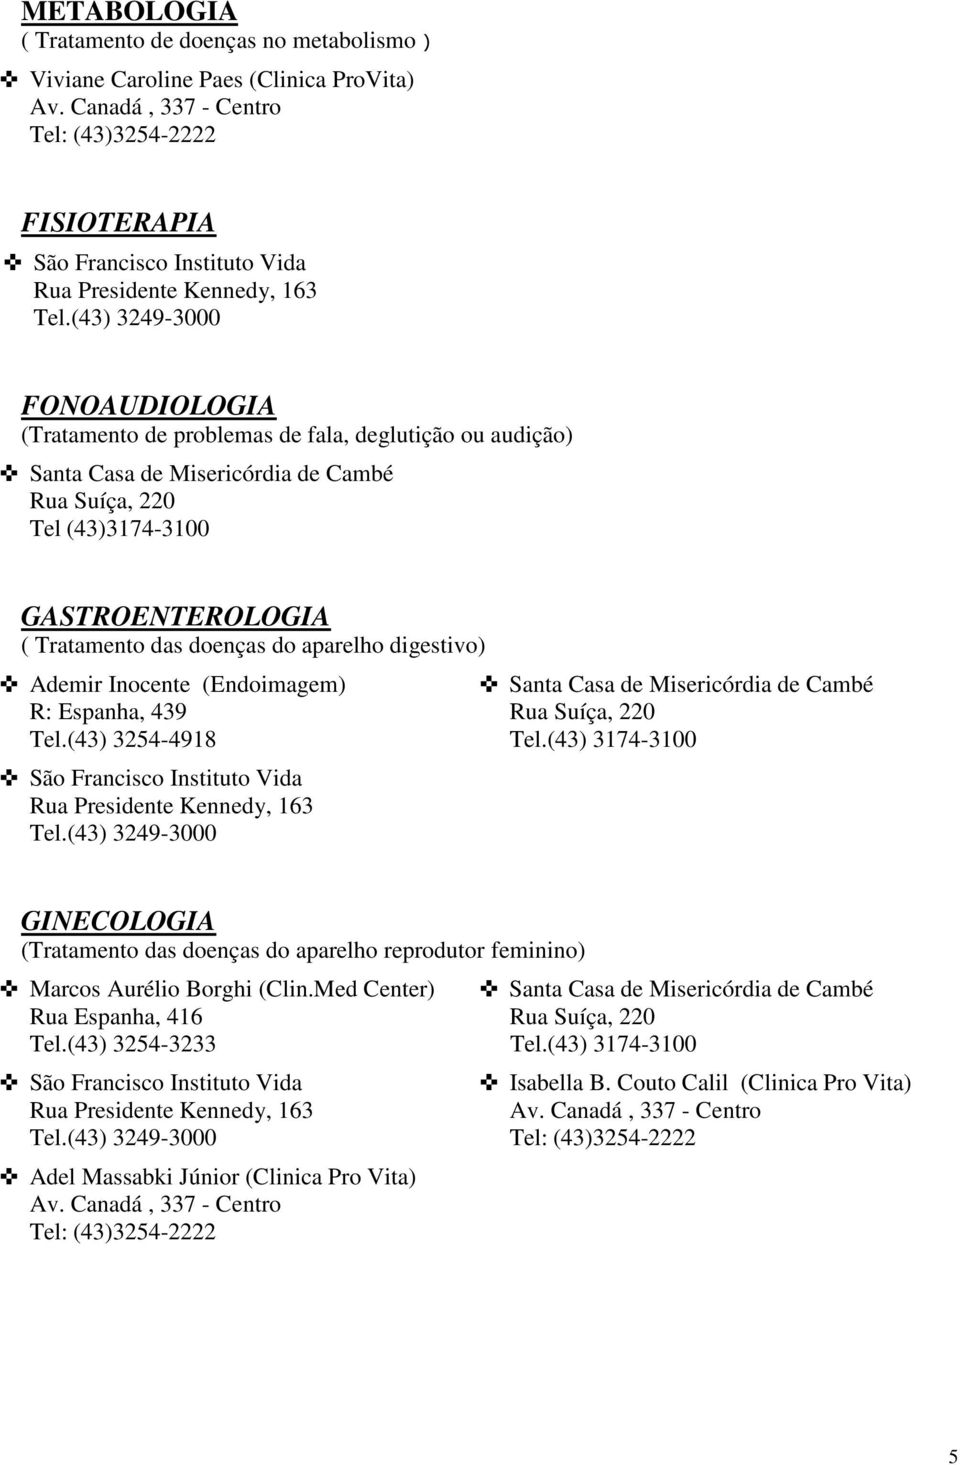 digestivo) Ademir Inocente (Endoimagem) GINECOLOGIA (Tratamento das doenças do aparelho reprodutor feminino) Marcos Aurélio